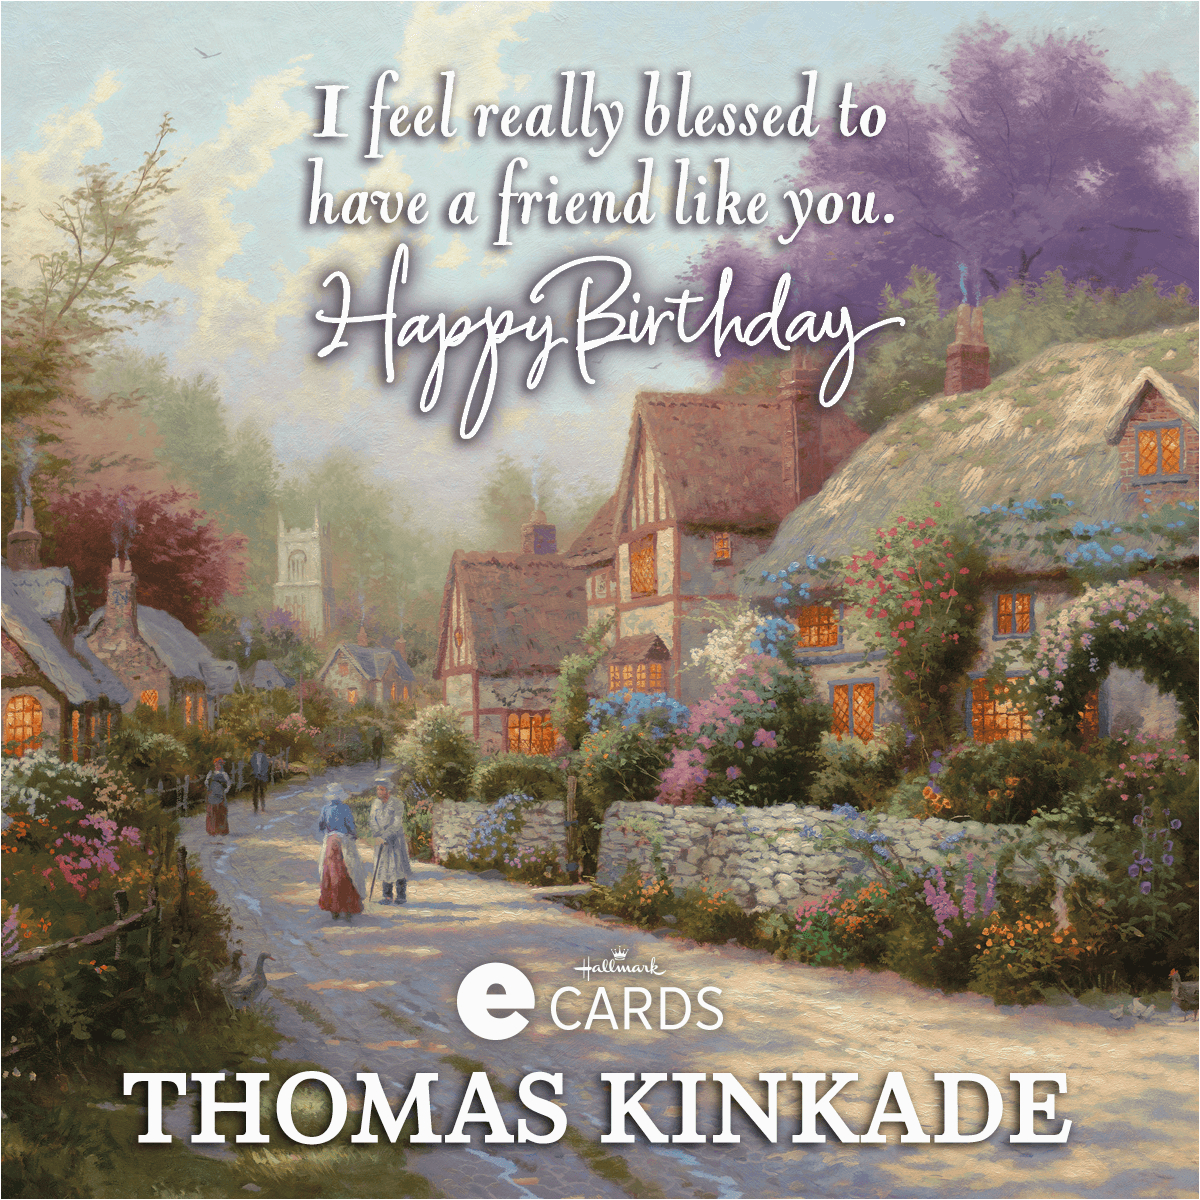 Thomas Kinkade Birthday Cards New Thomas Kinkade Birthday E Cards the Thomas Kinkade